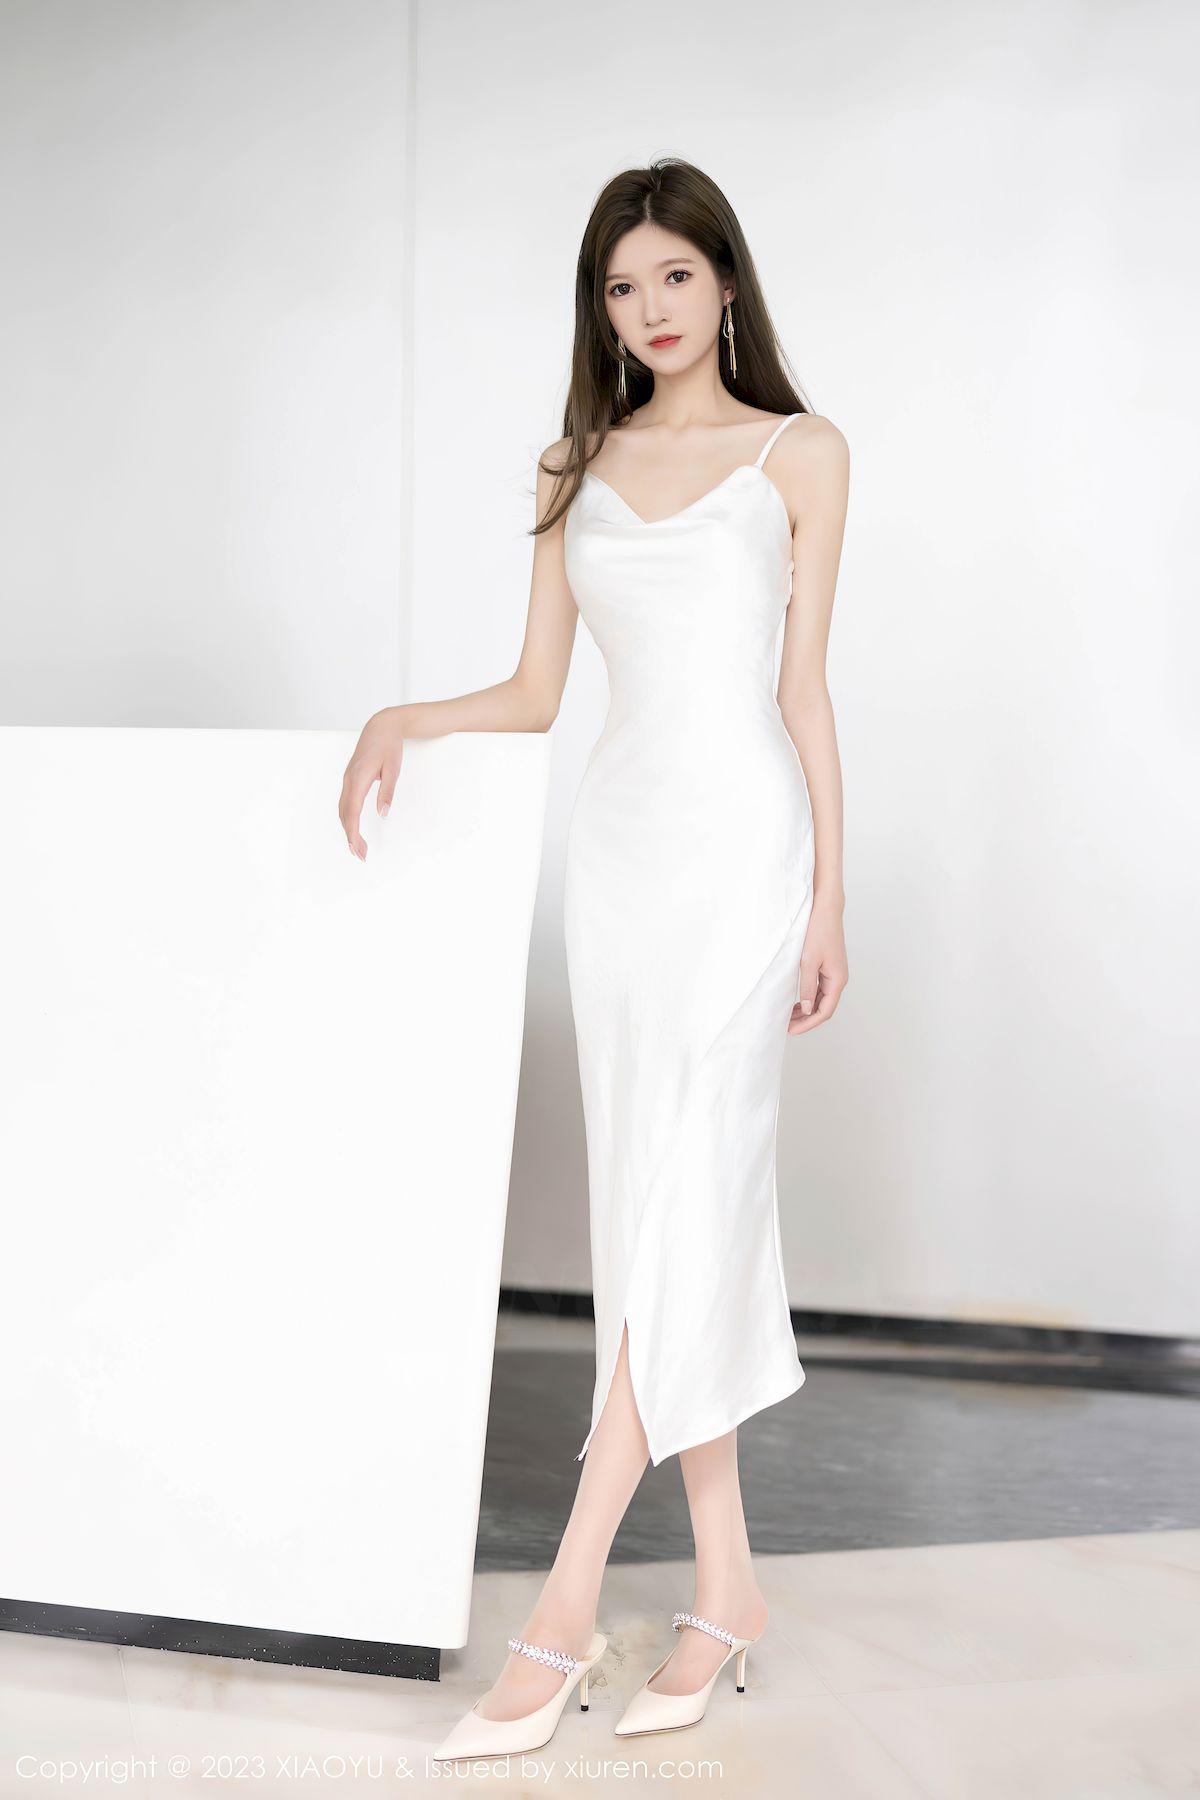 程程程-白色长裙搭配原色丝袜私房写真